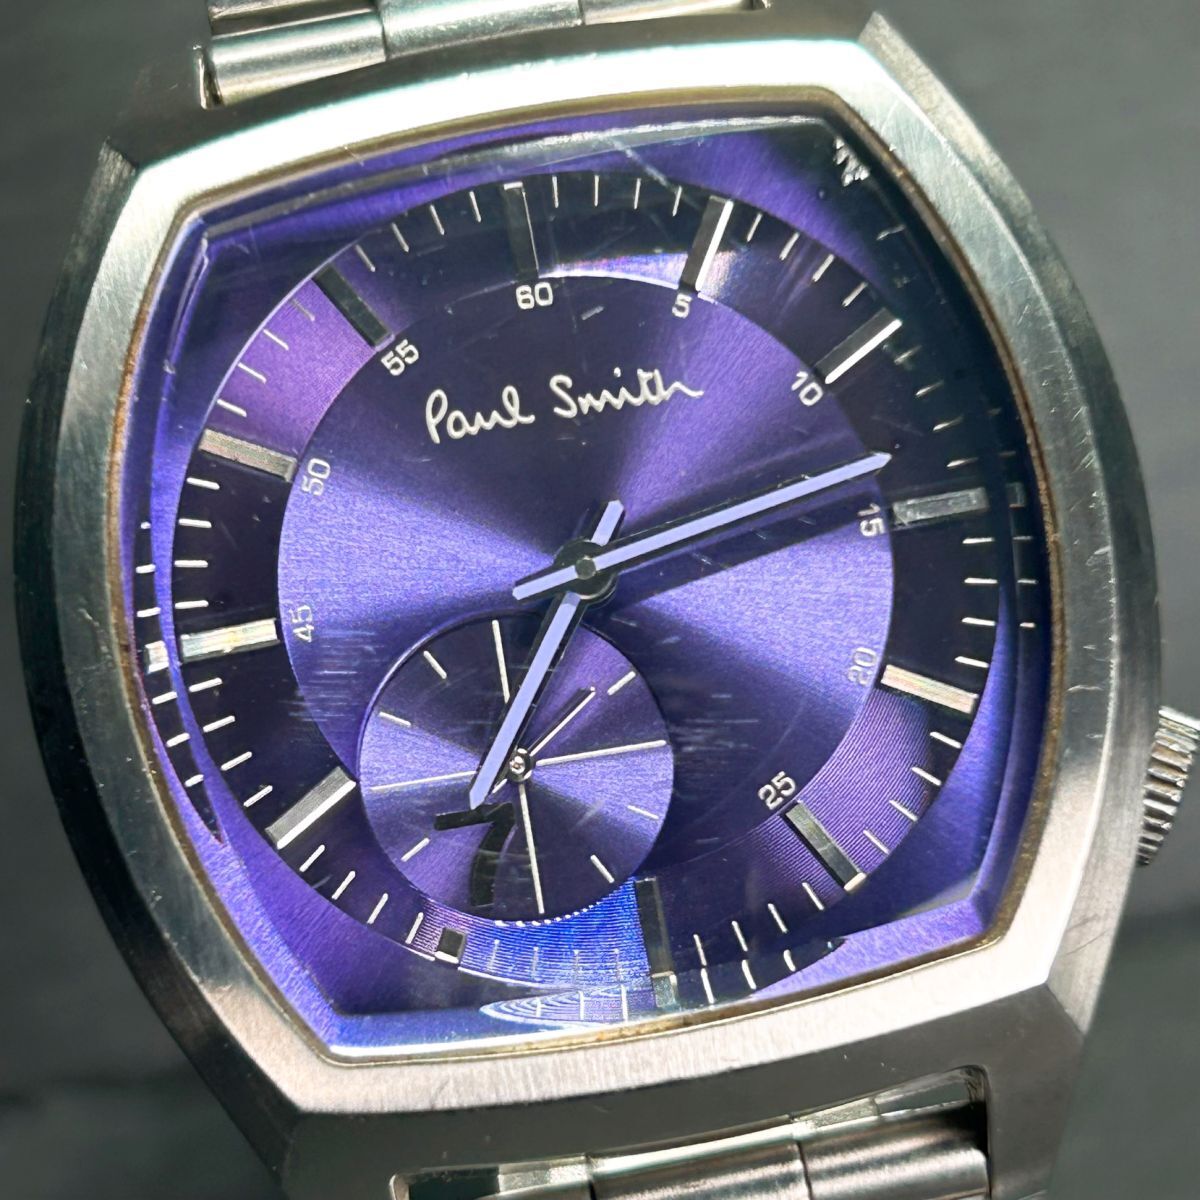 Paul Smith ポールスミス 1045-T001467 腕時計 クオーツ アナログ スモールセコンド ステンレススチール 新品電池交換済み 動作確認済みの画像1